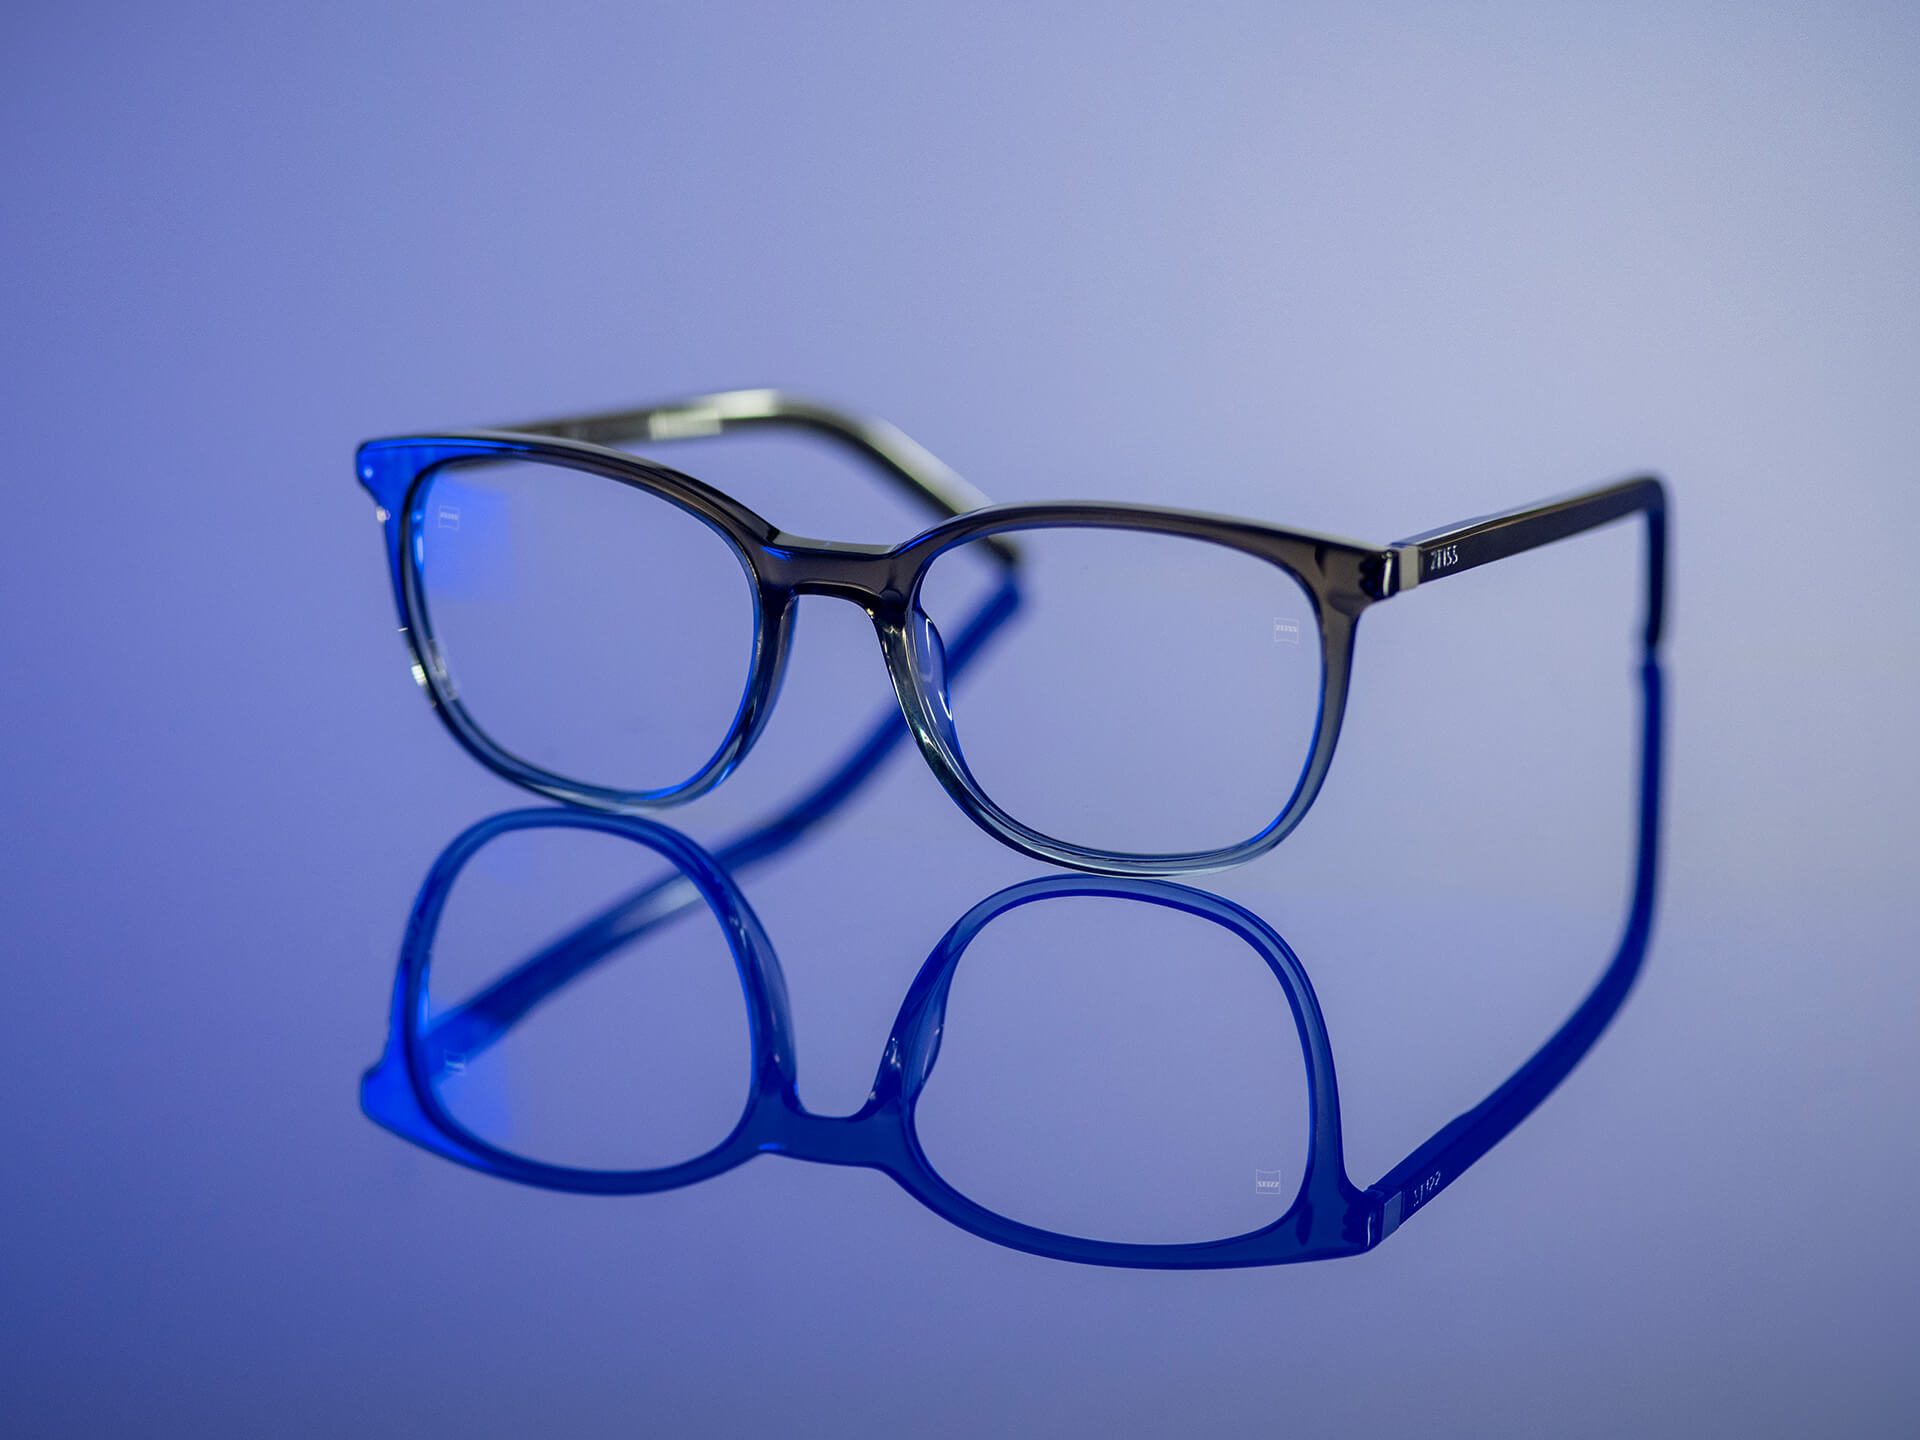 Briller som kan sees i blåaktig lys og har ZEISS-glass med BlueGuard glassmateriale. Bare en svært redusert blålig refleksjon er synlig på glassene.